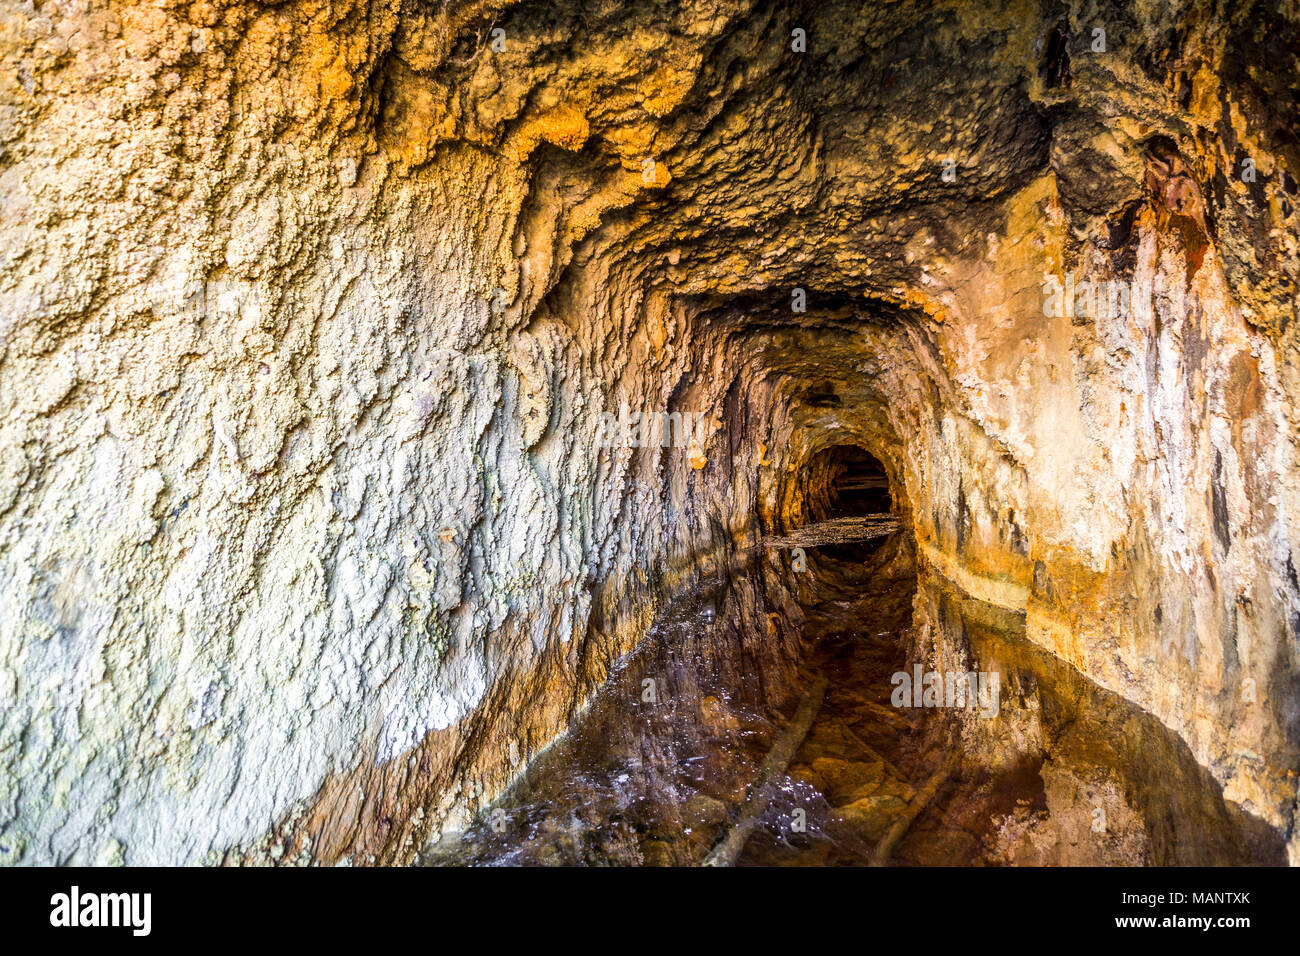 Tunnel minier remplie d'eau dans Pena del Hierro, Nerva, Andalousie, Espagne Banque D'Images